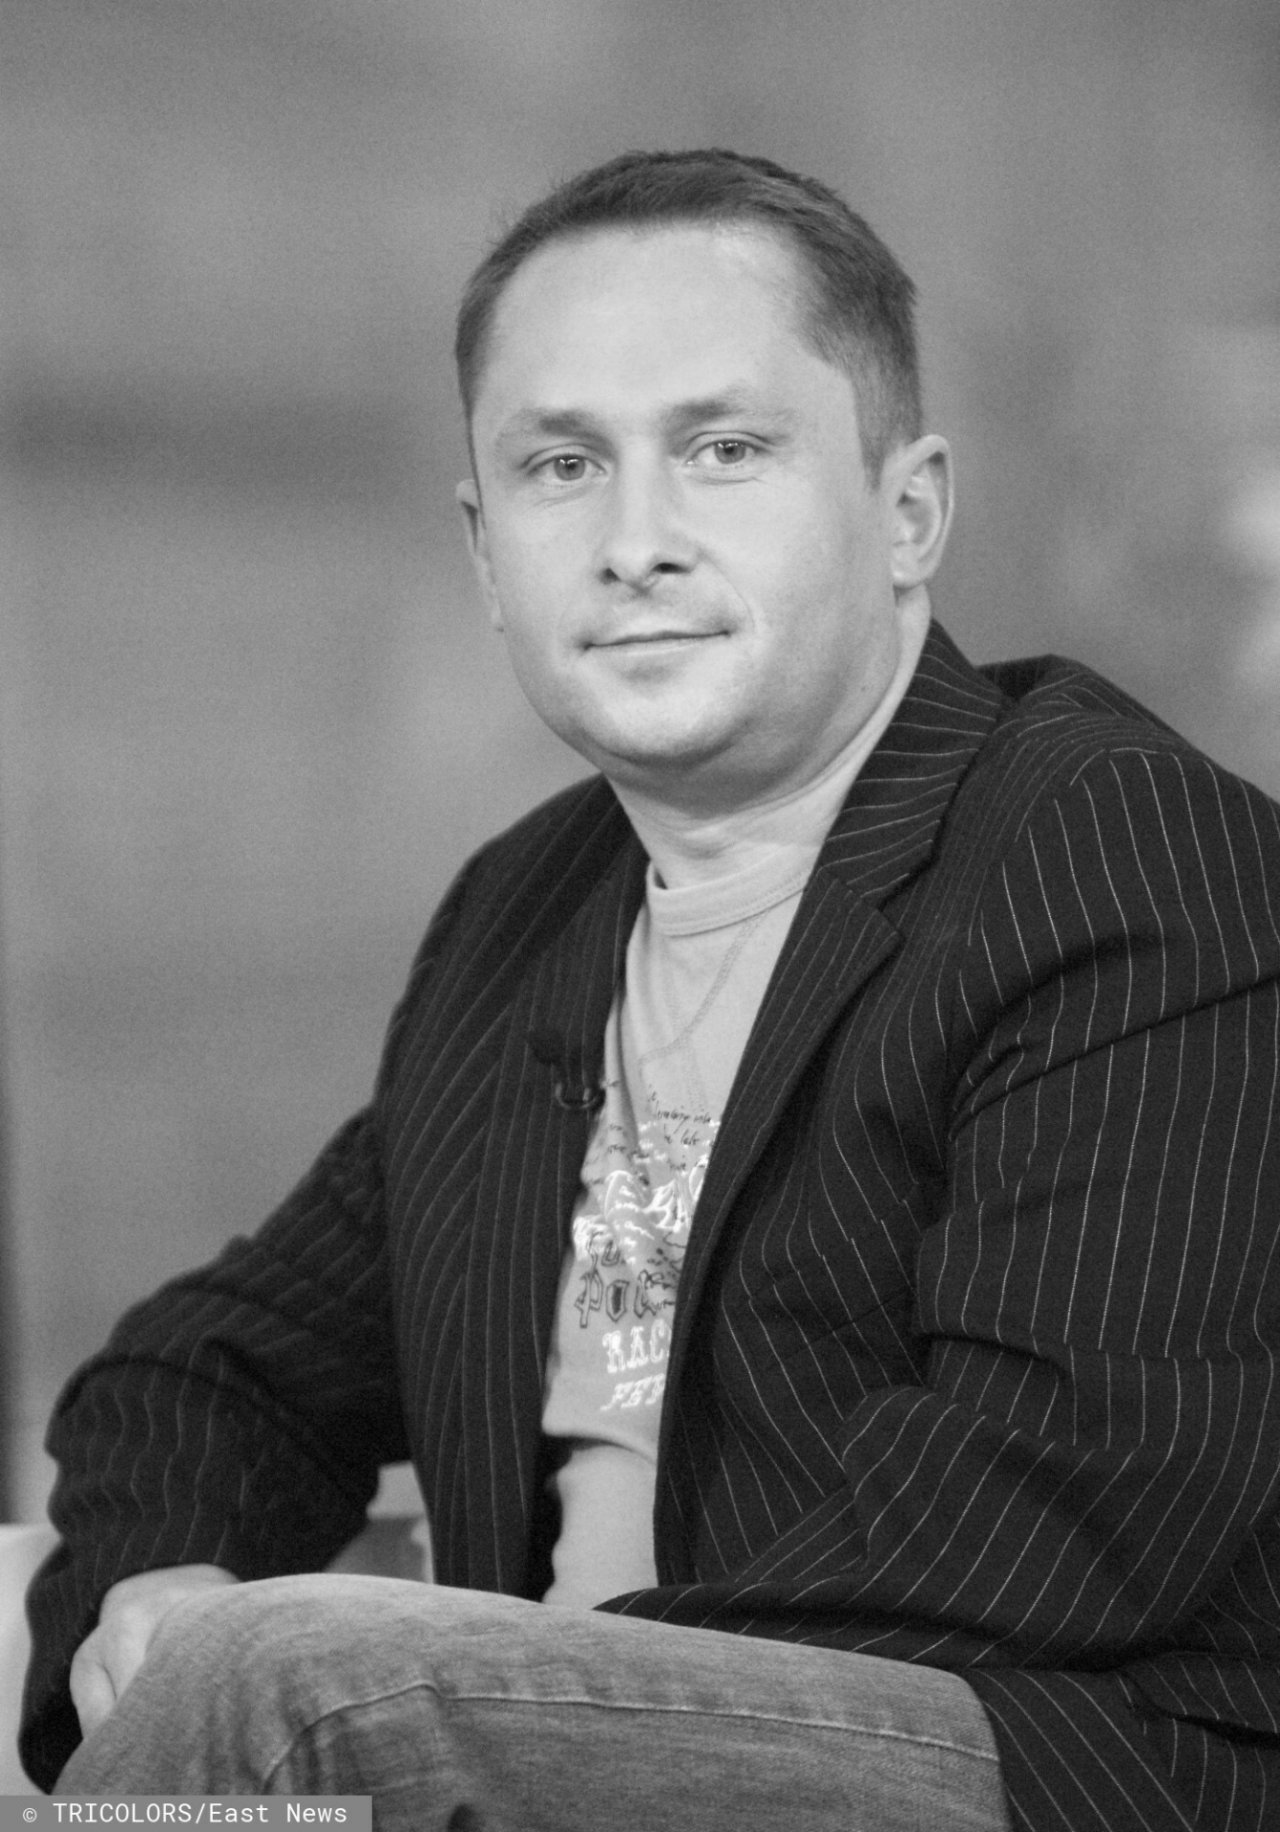 Kamil Durczok w garniturze i koszulce